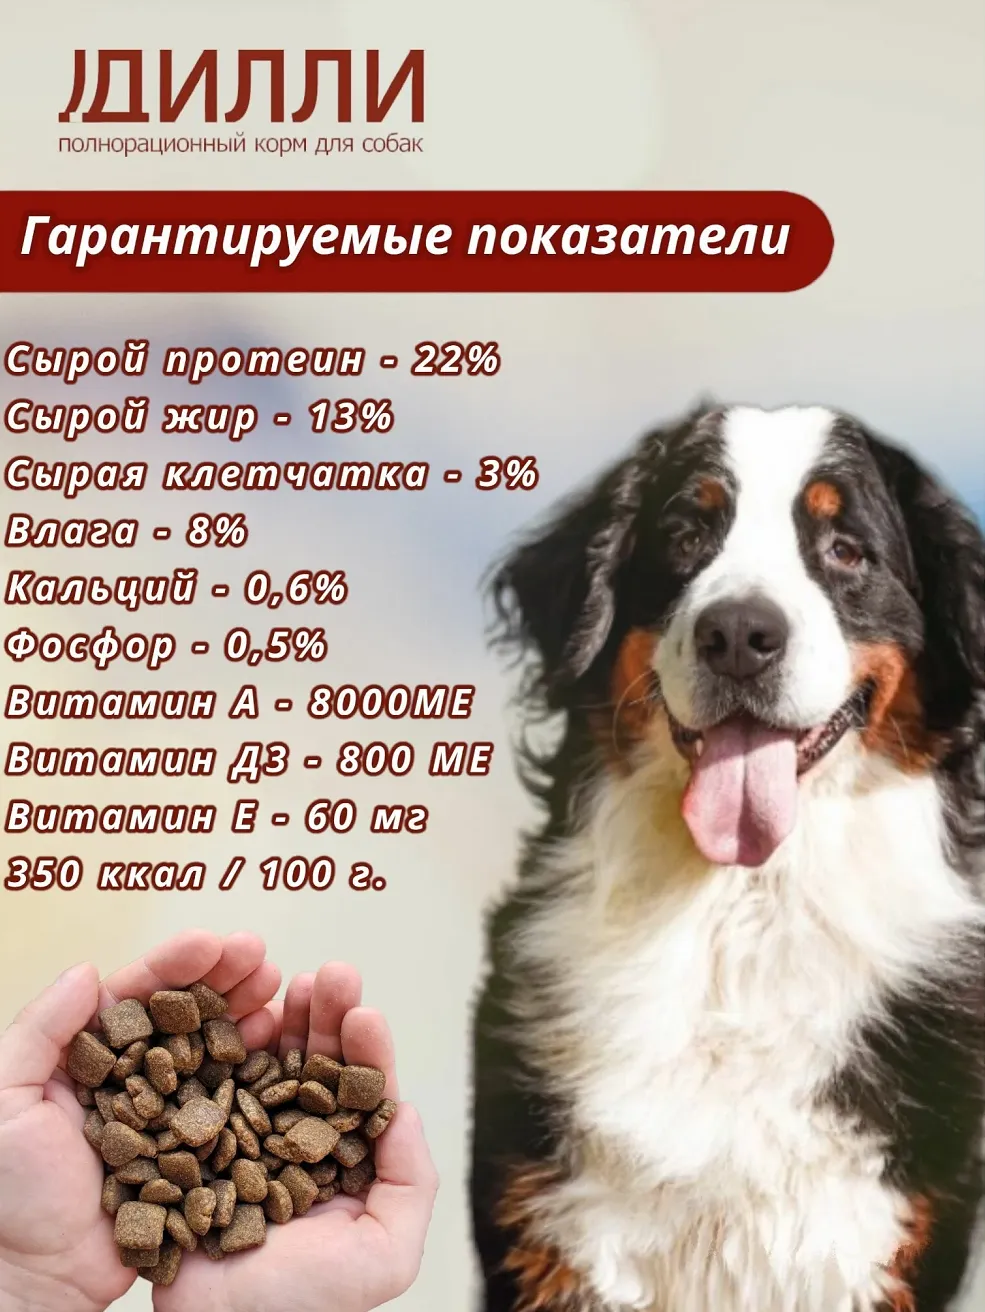 Аналитический состав сухого корма для собак Дилли эконом класса (информативная картинка)